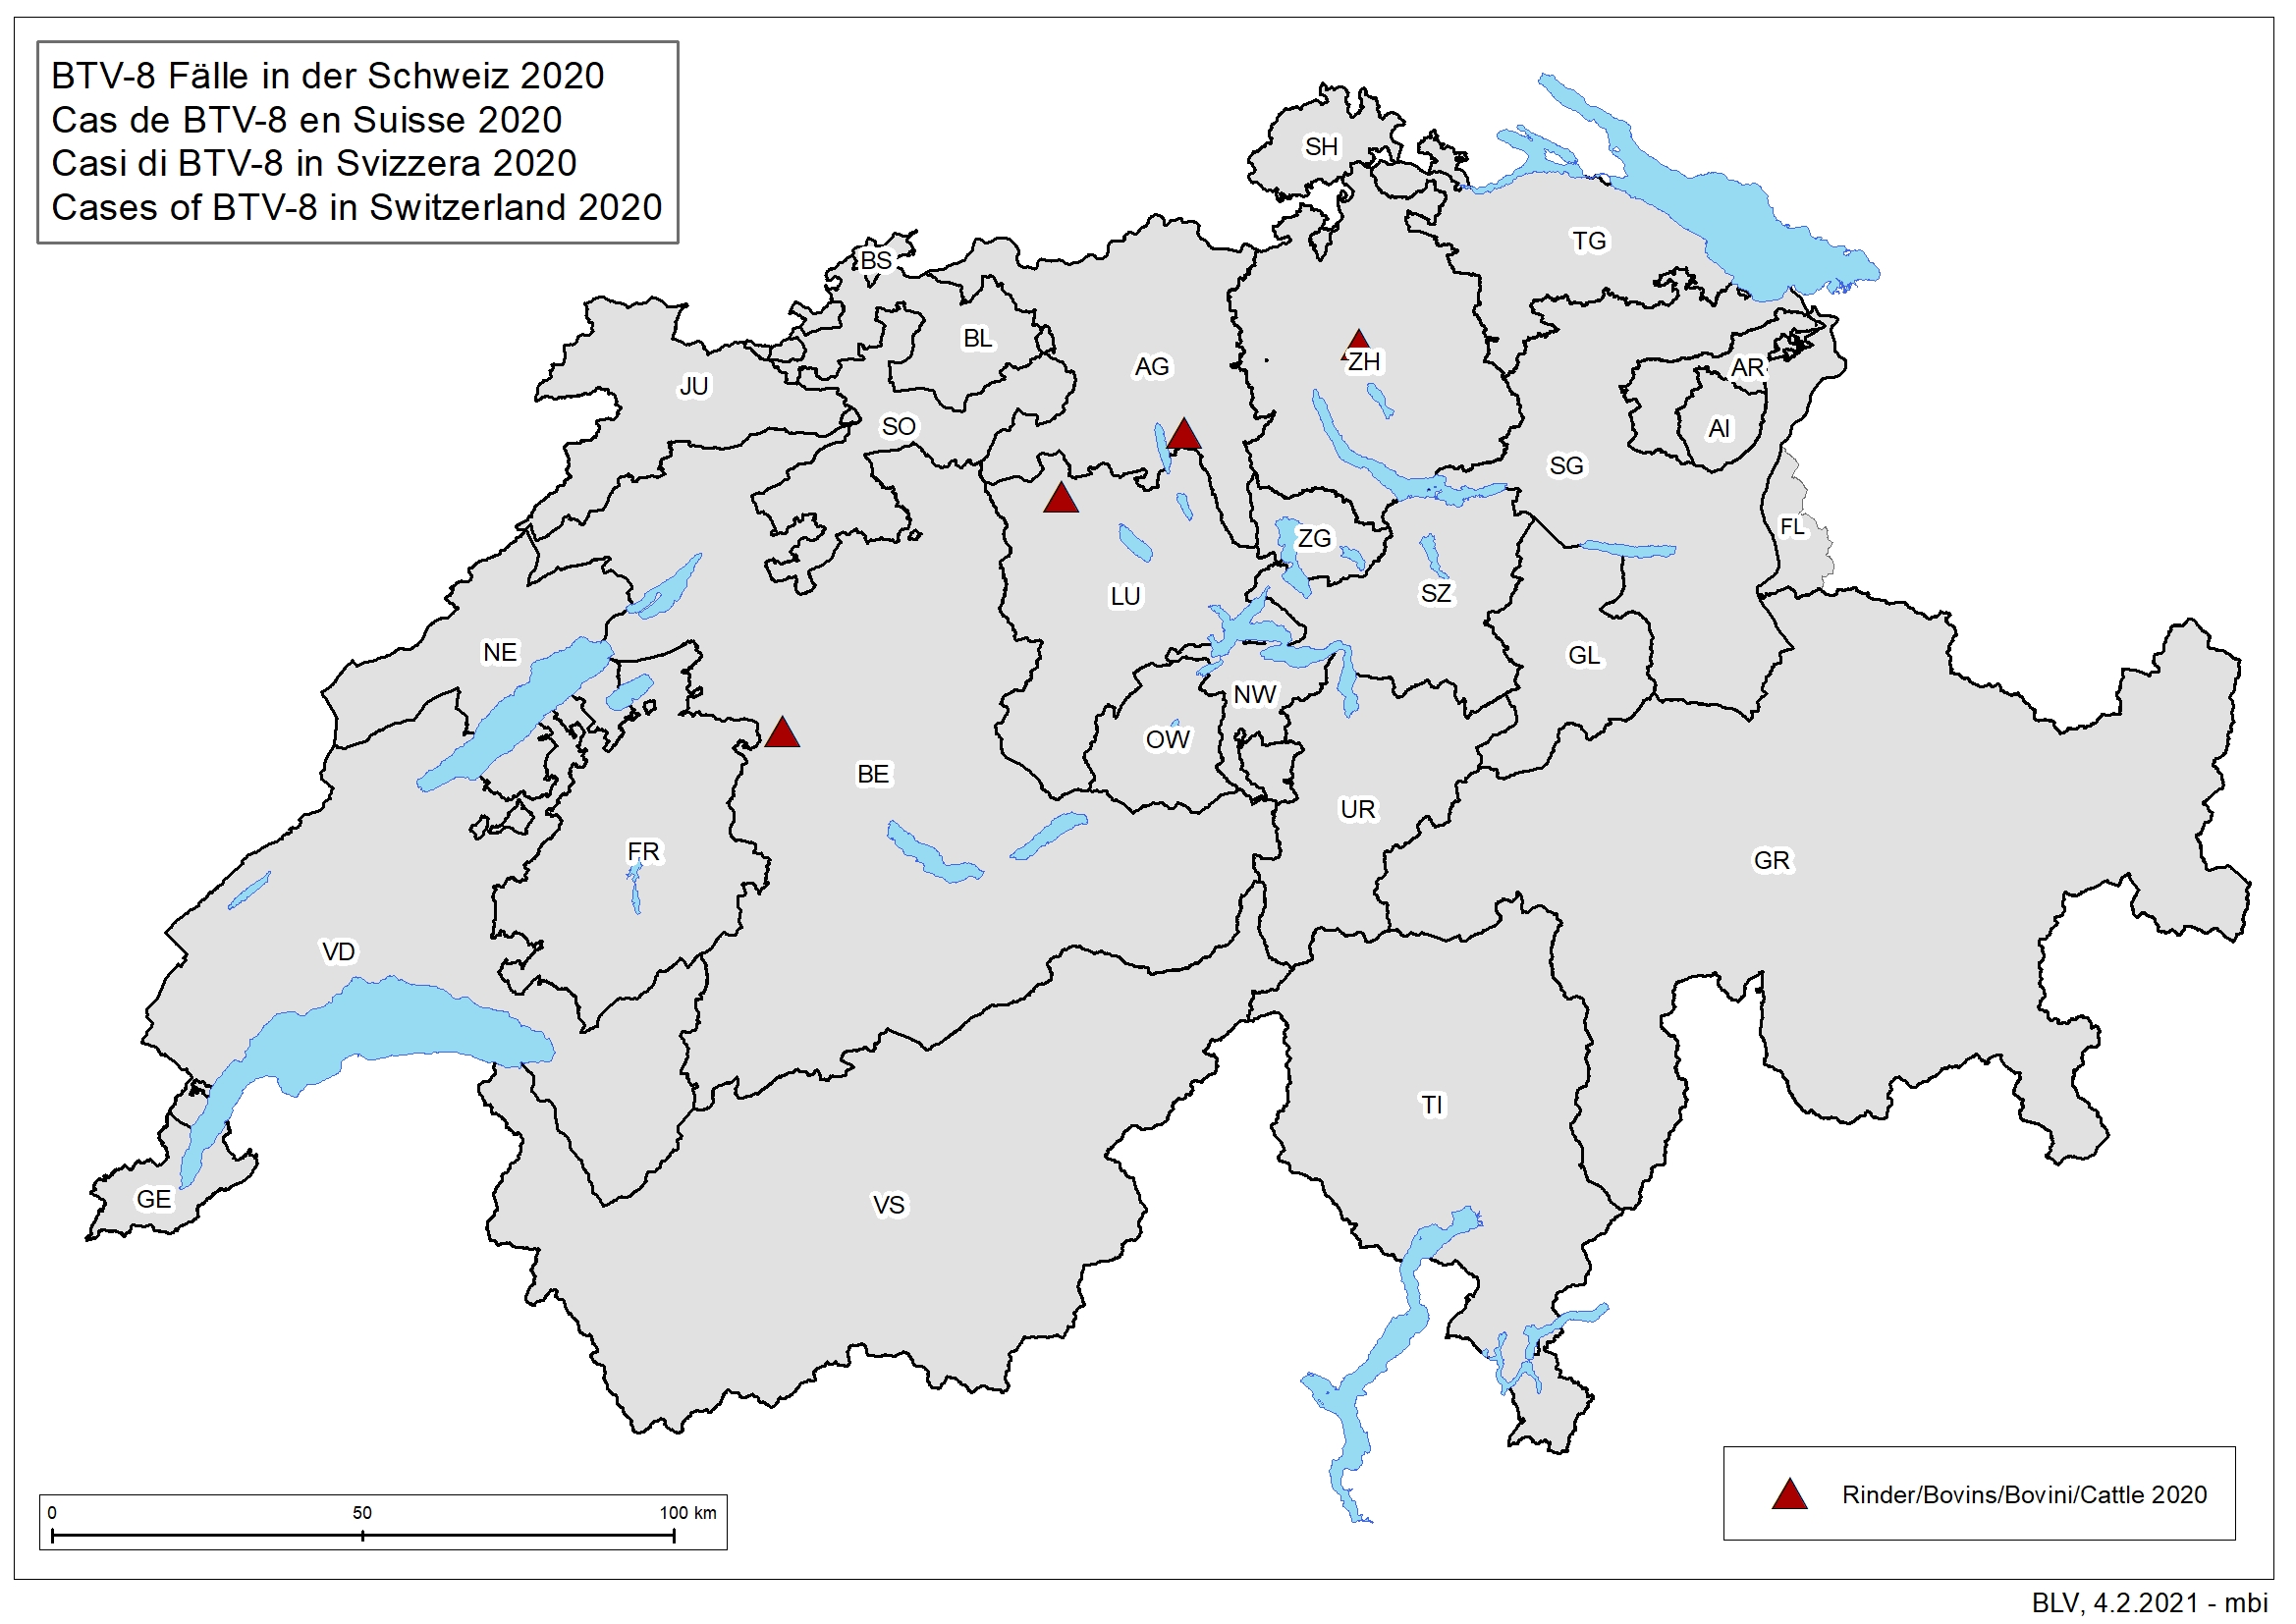 Casi di BTV-8 in Svizzera 2020